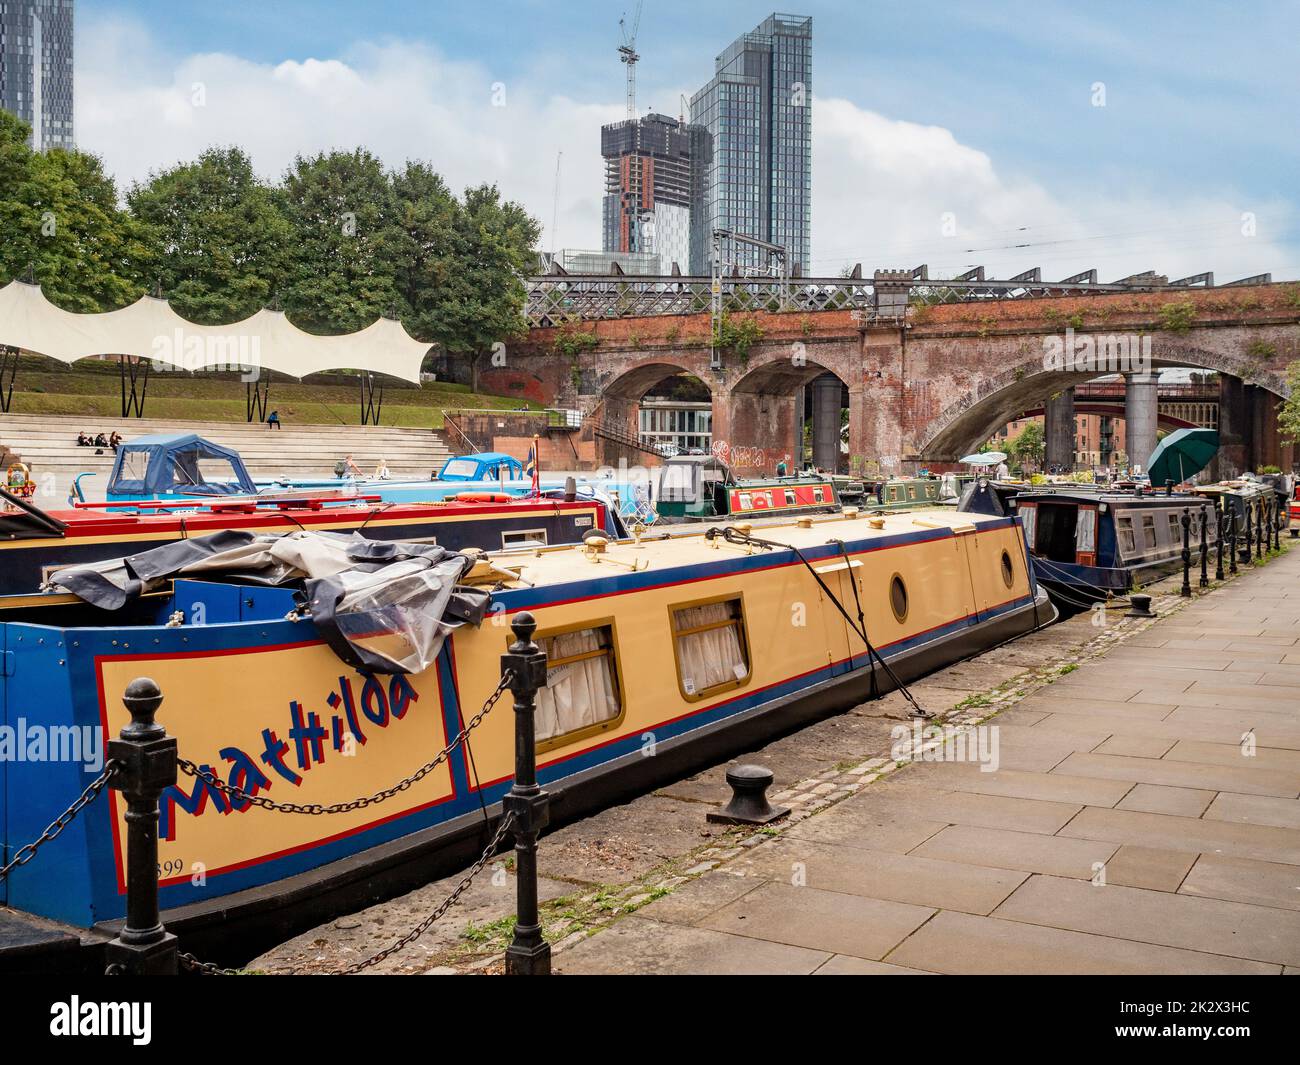 Des bateaux étroits amarrés dans le bras Staffordshire du canal Bridgewater avec Elizabeth Tower au loin. Manchester, Royaume-Uni. Banque D'Images